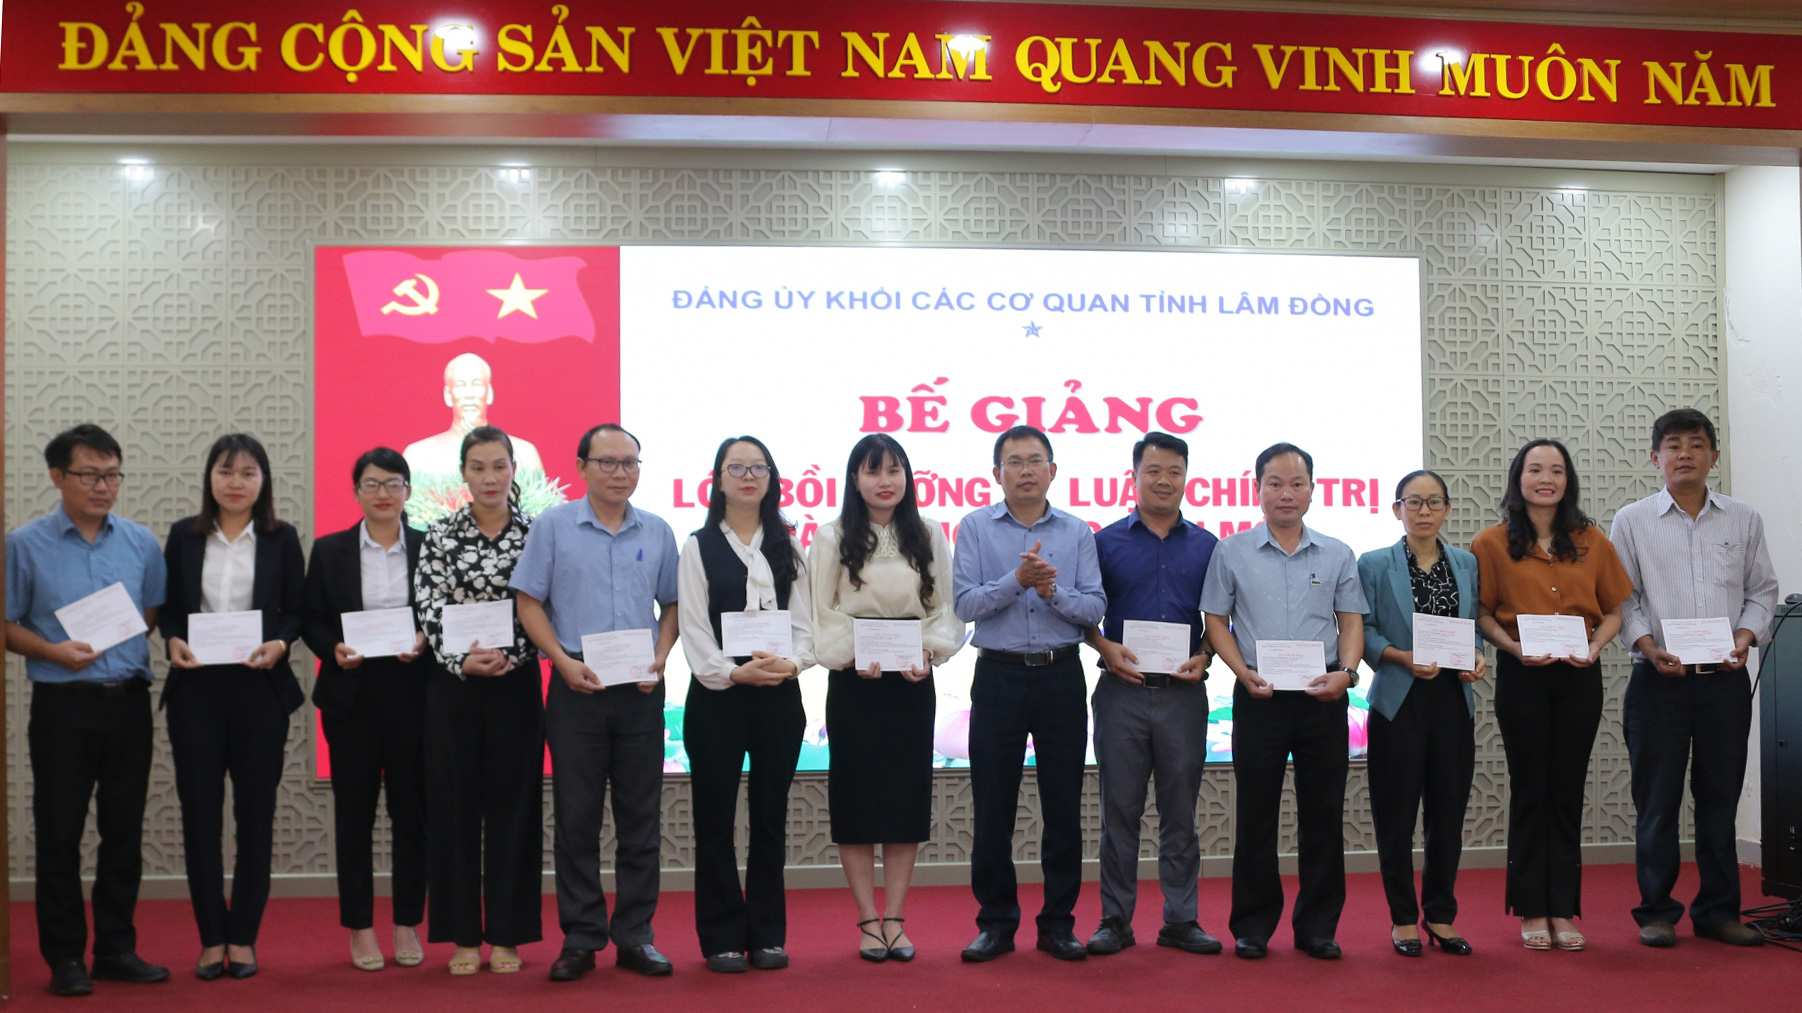 Đồng chí Đỗ Văn Thoan - Chủ nhiệm Ủy ban Kiểm tra Đảng ủy Khối trao giấy chứng nhận cho các học viên